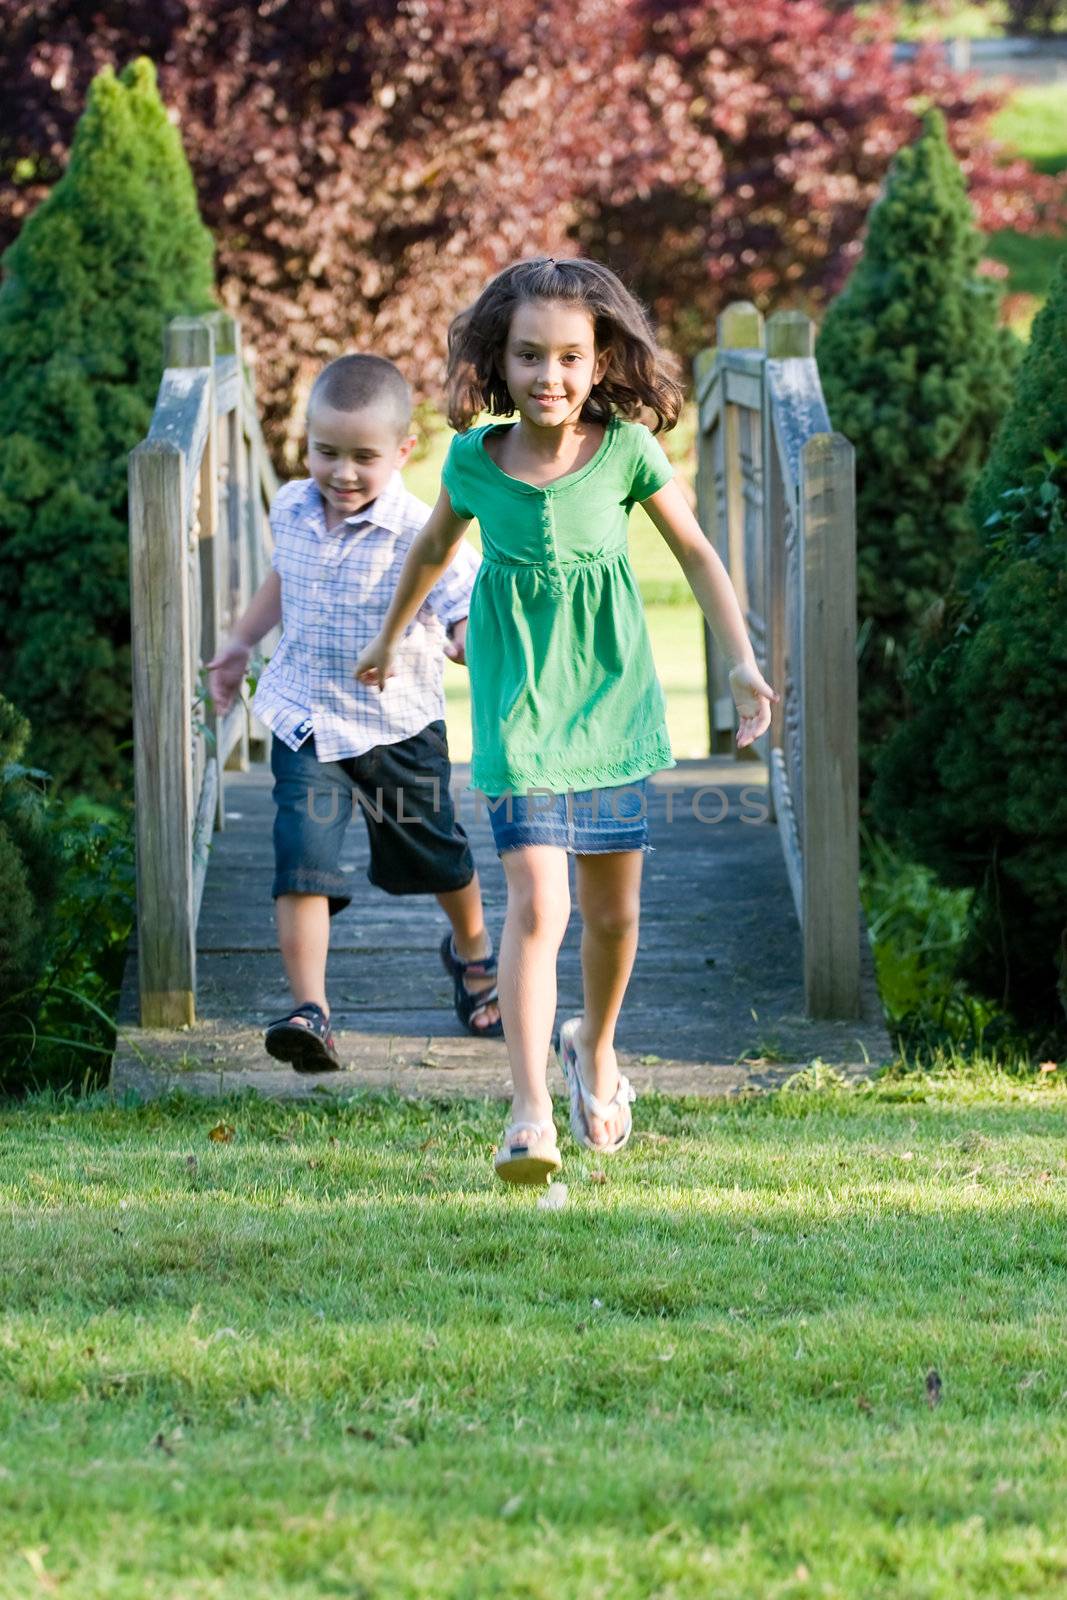 A cute little children running happily over a wooden bridge through the park.